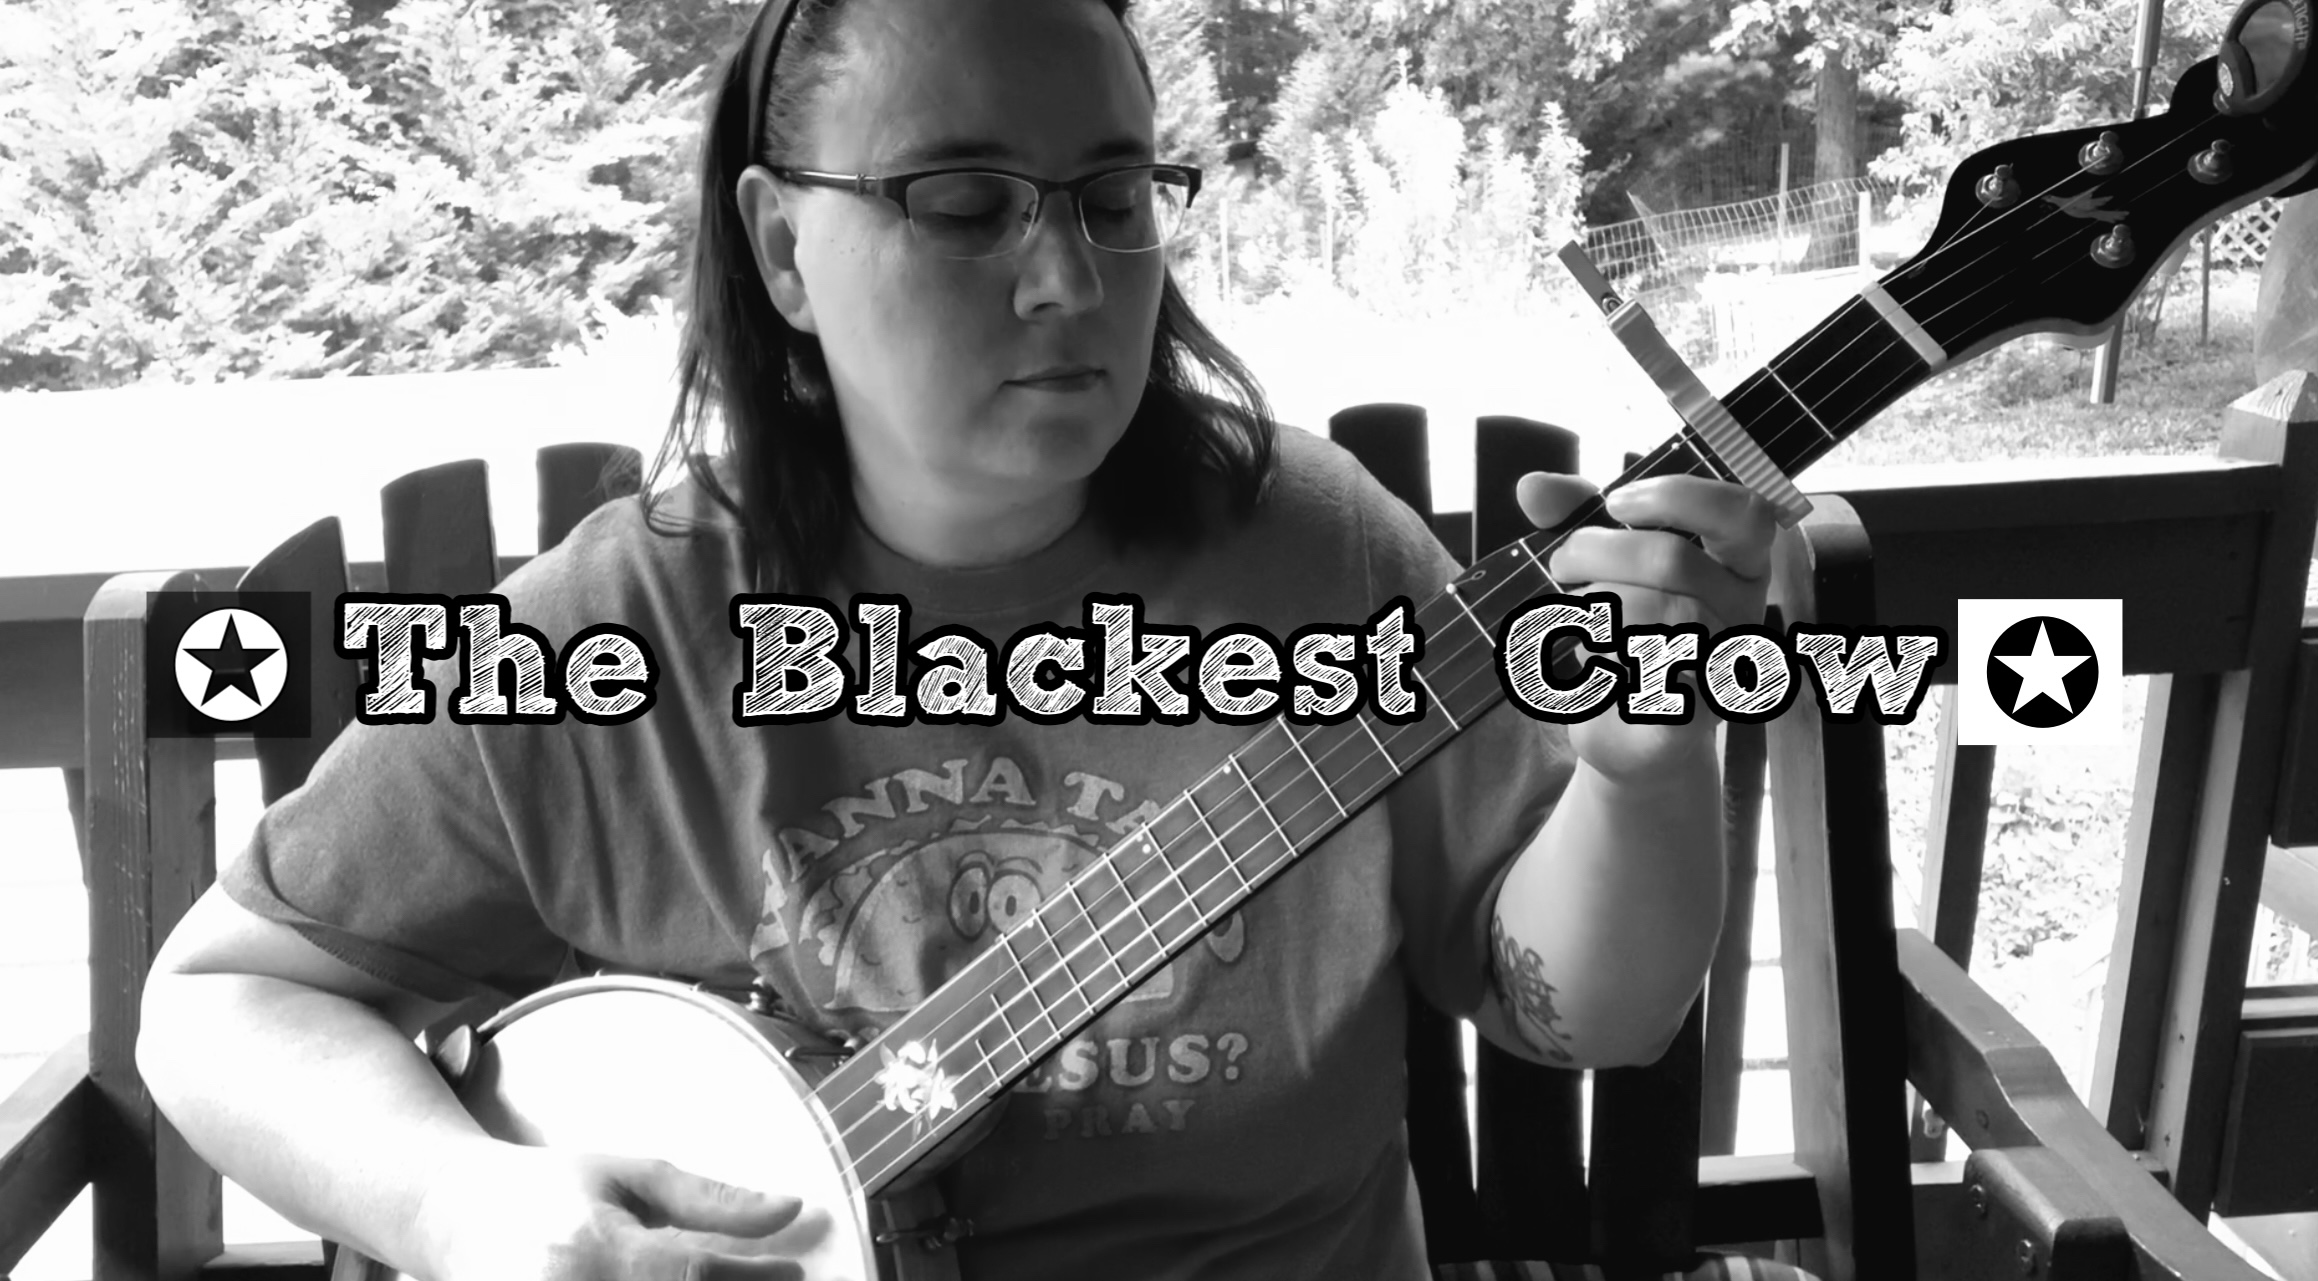 The Blackest Crow – 2 Finger Banjo 2FTL